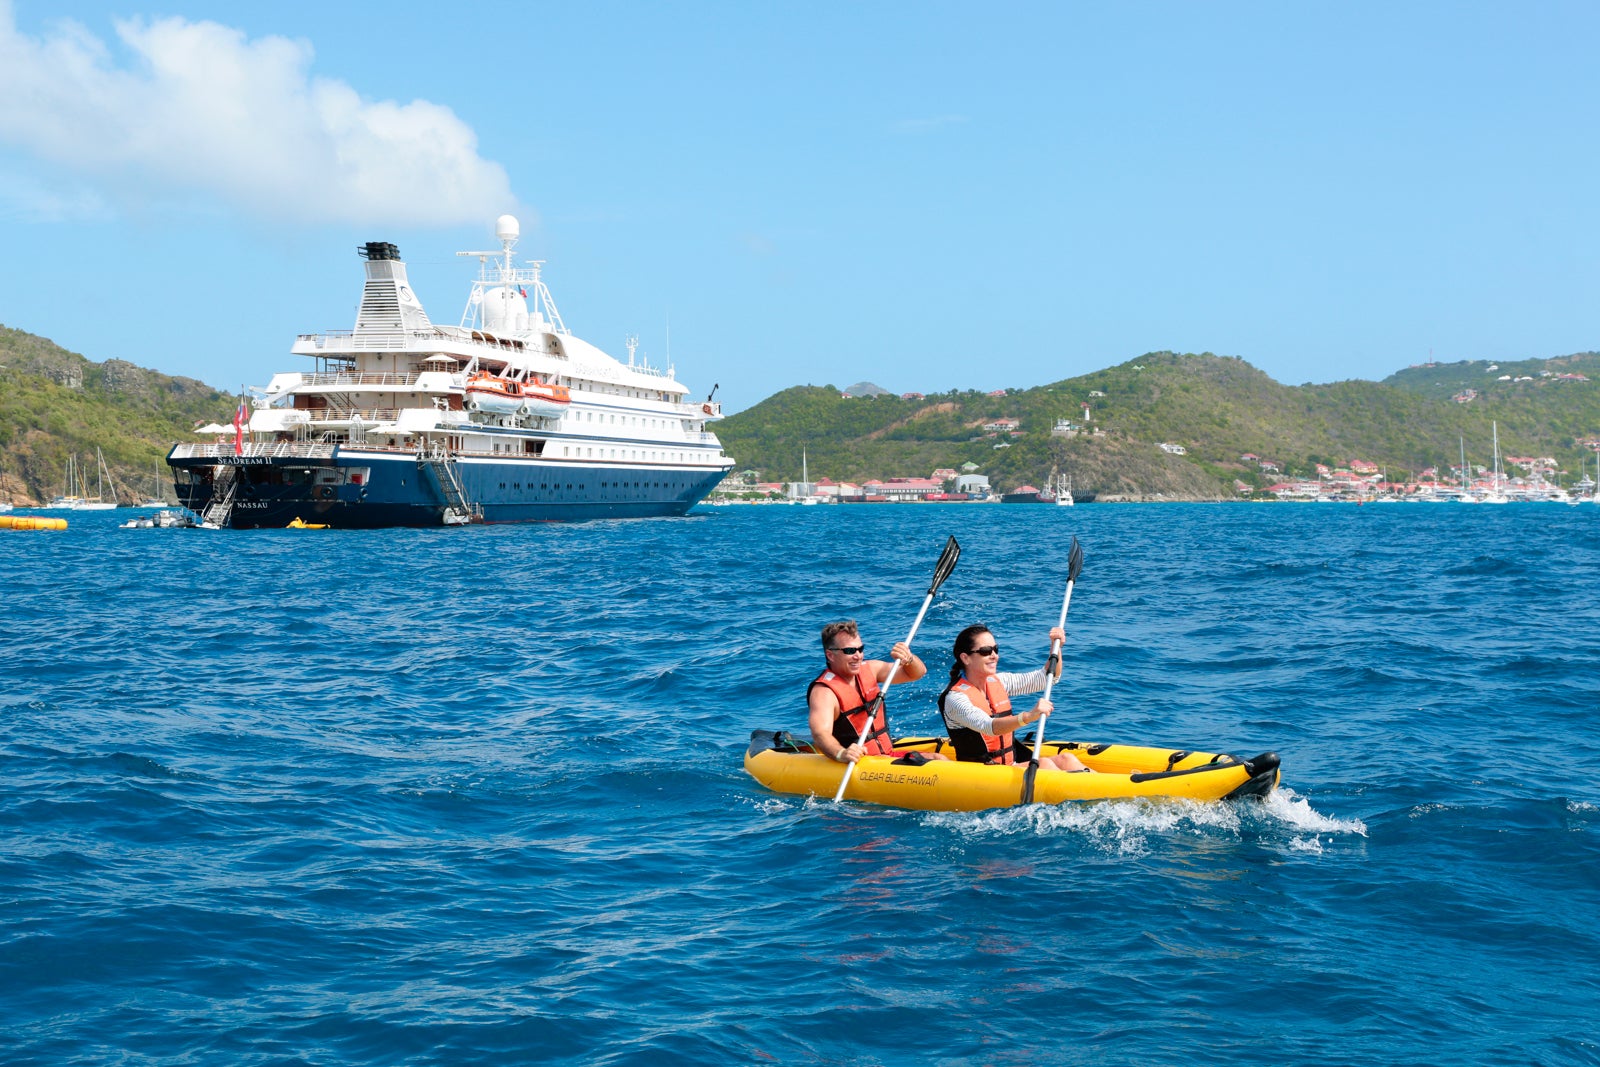 Kayaking near cruise ship